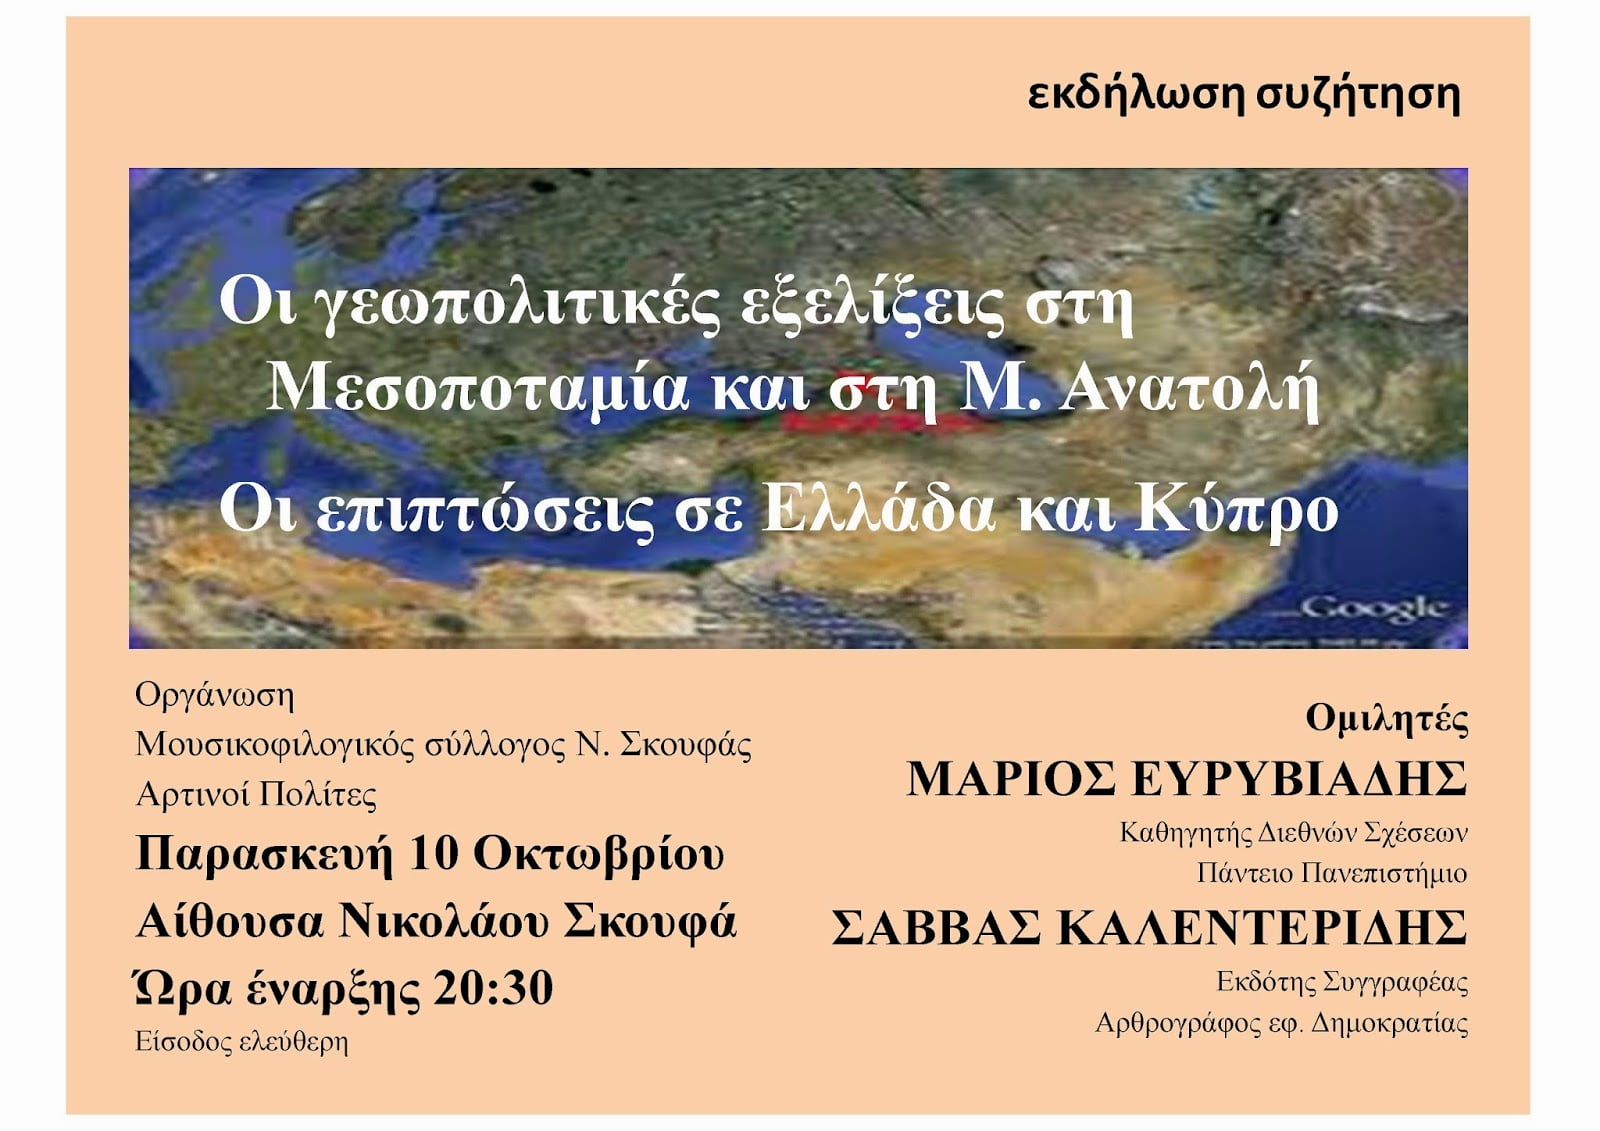 Μάριος Ευρυβιάδης και Σάββας Καλεντερίδης στην Άρτα: Οι γεωπολιτικές εξελίξεις στη Μ. Ανατολή – Επιπτώσεις σε Κύπρο και Ελλάδα